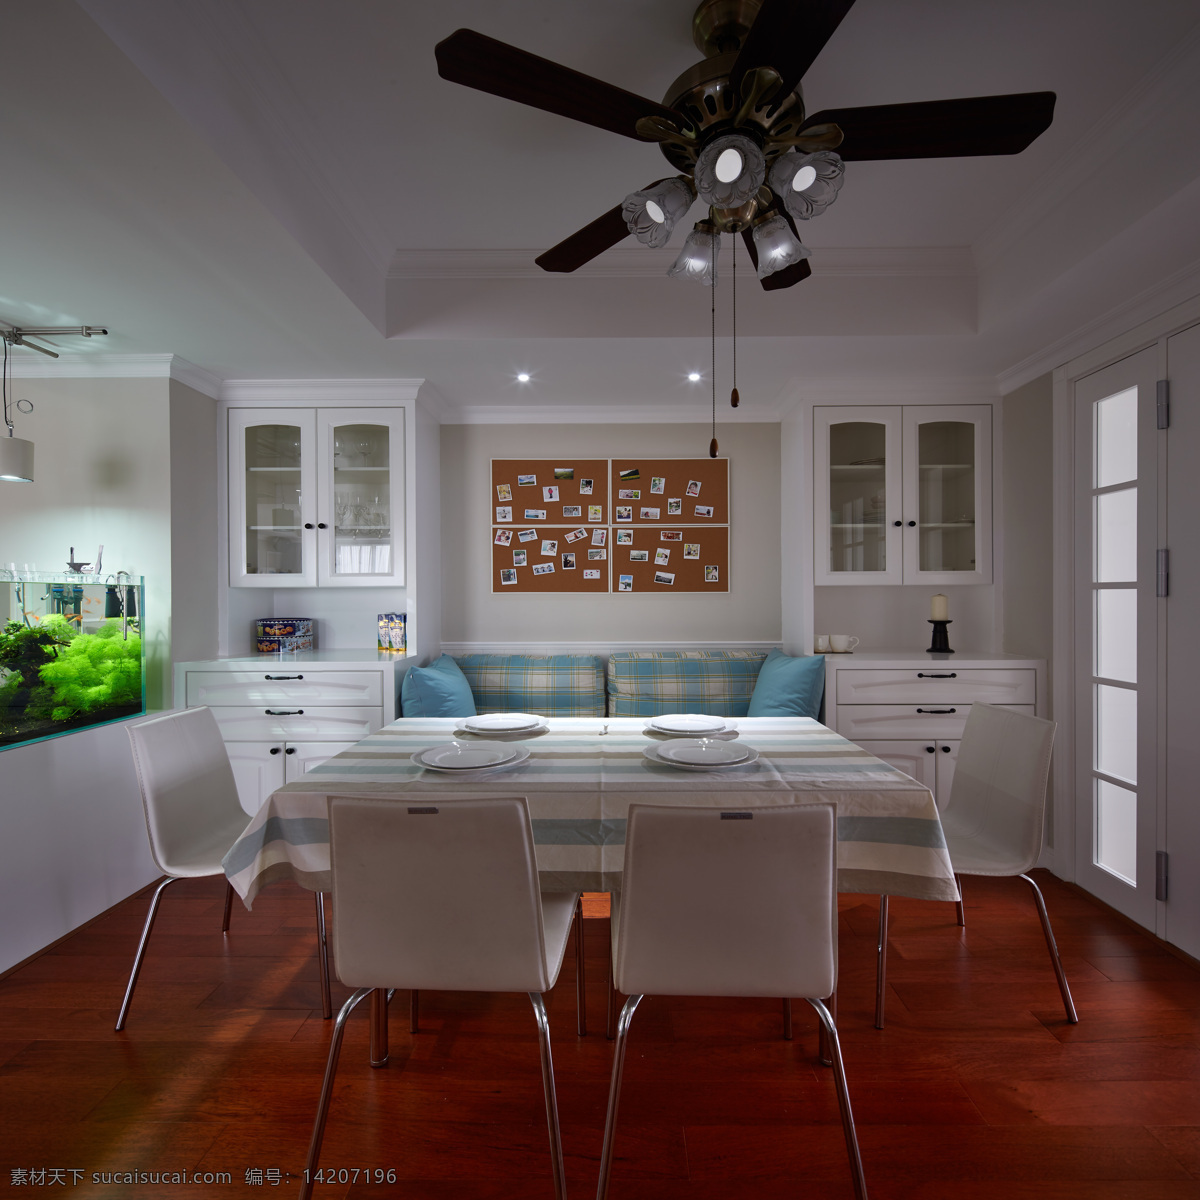 现代 清新 时尚 客厅 木地板 室内装修 效果图 铜色吊扇 白色餐桌 白色背景墙 蓝色沙发